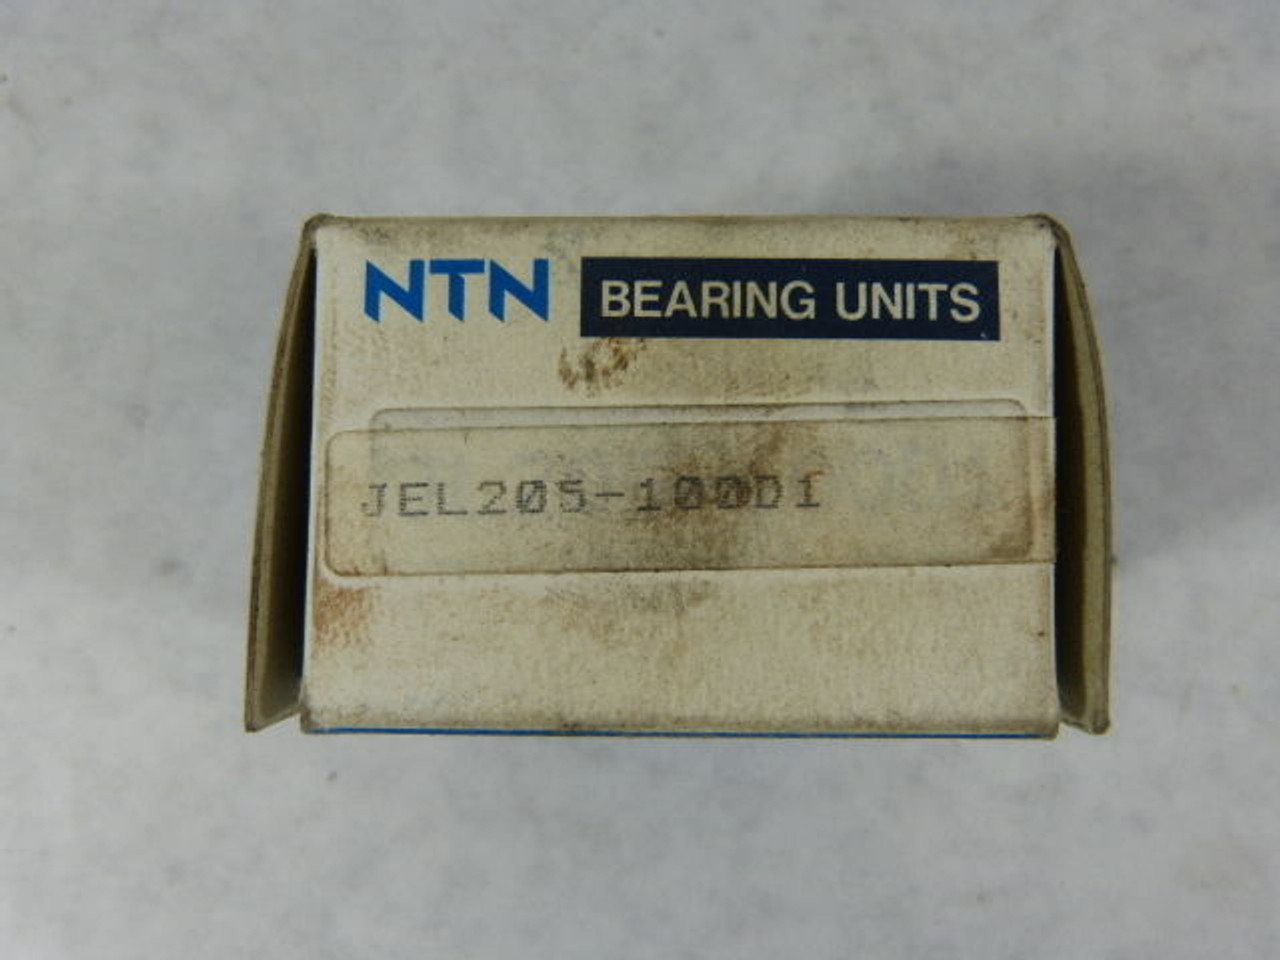 NTN JEL205-100D1 Bearing ! NEW !